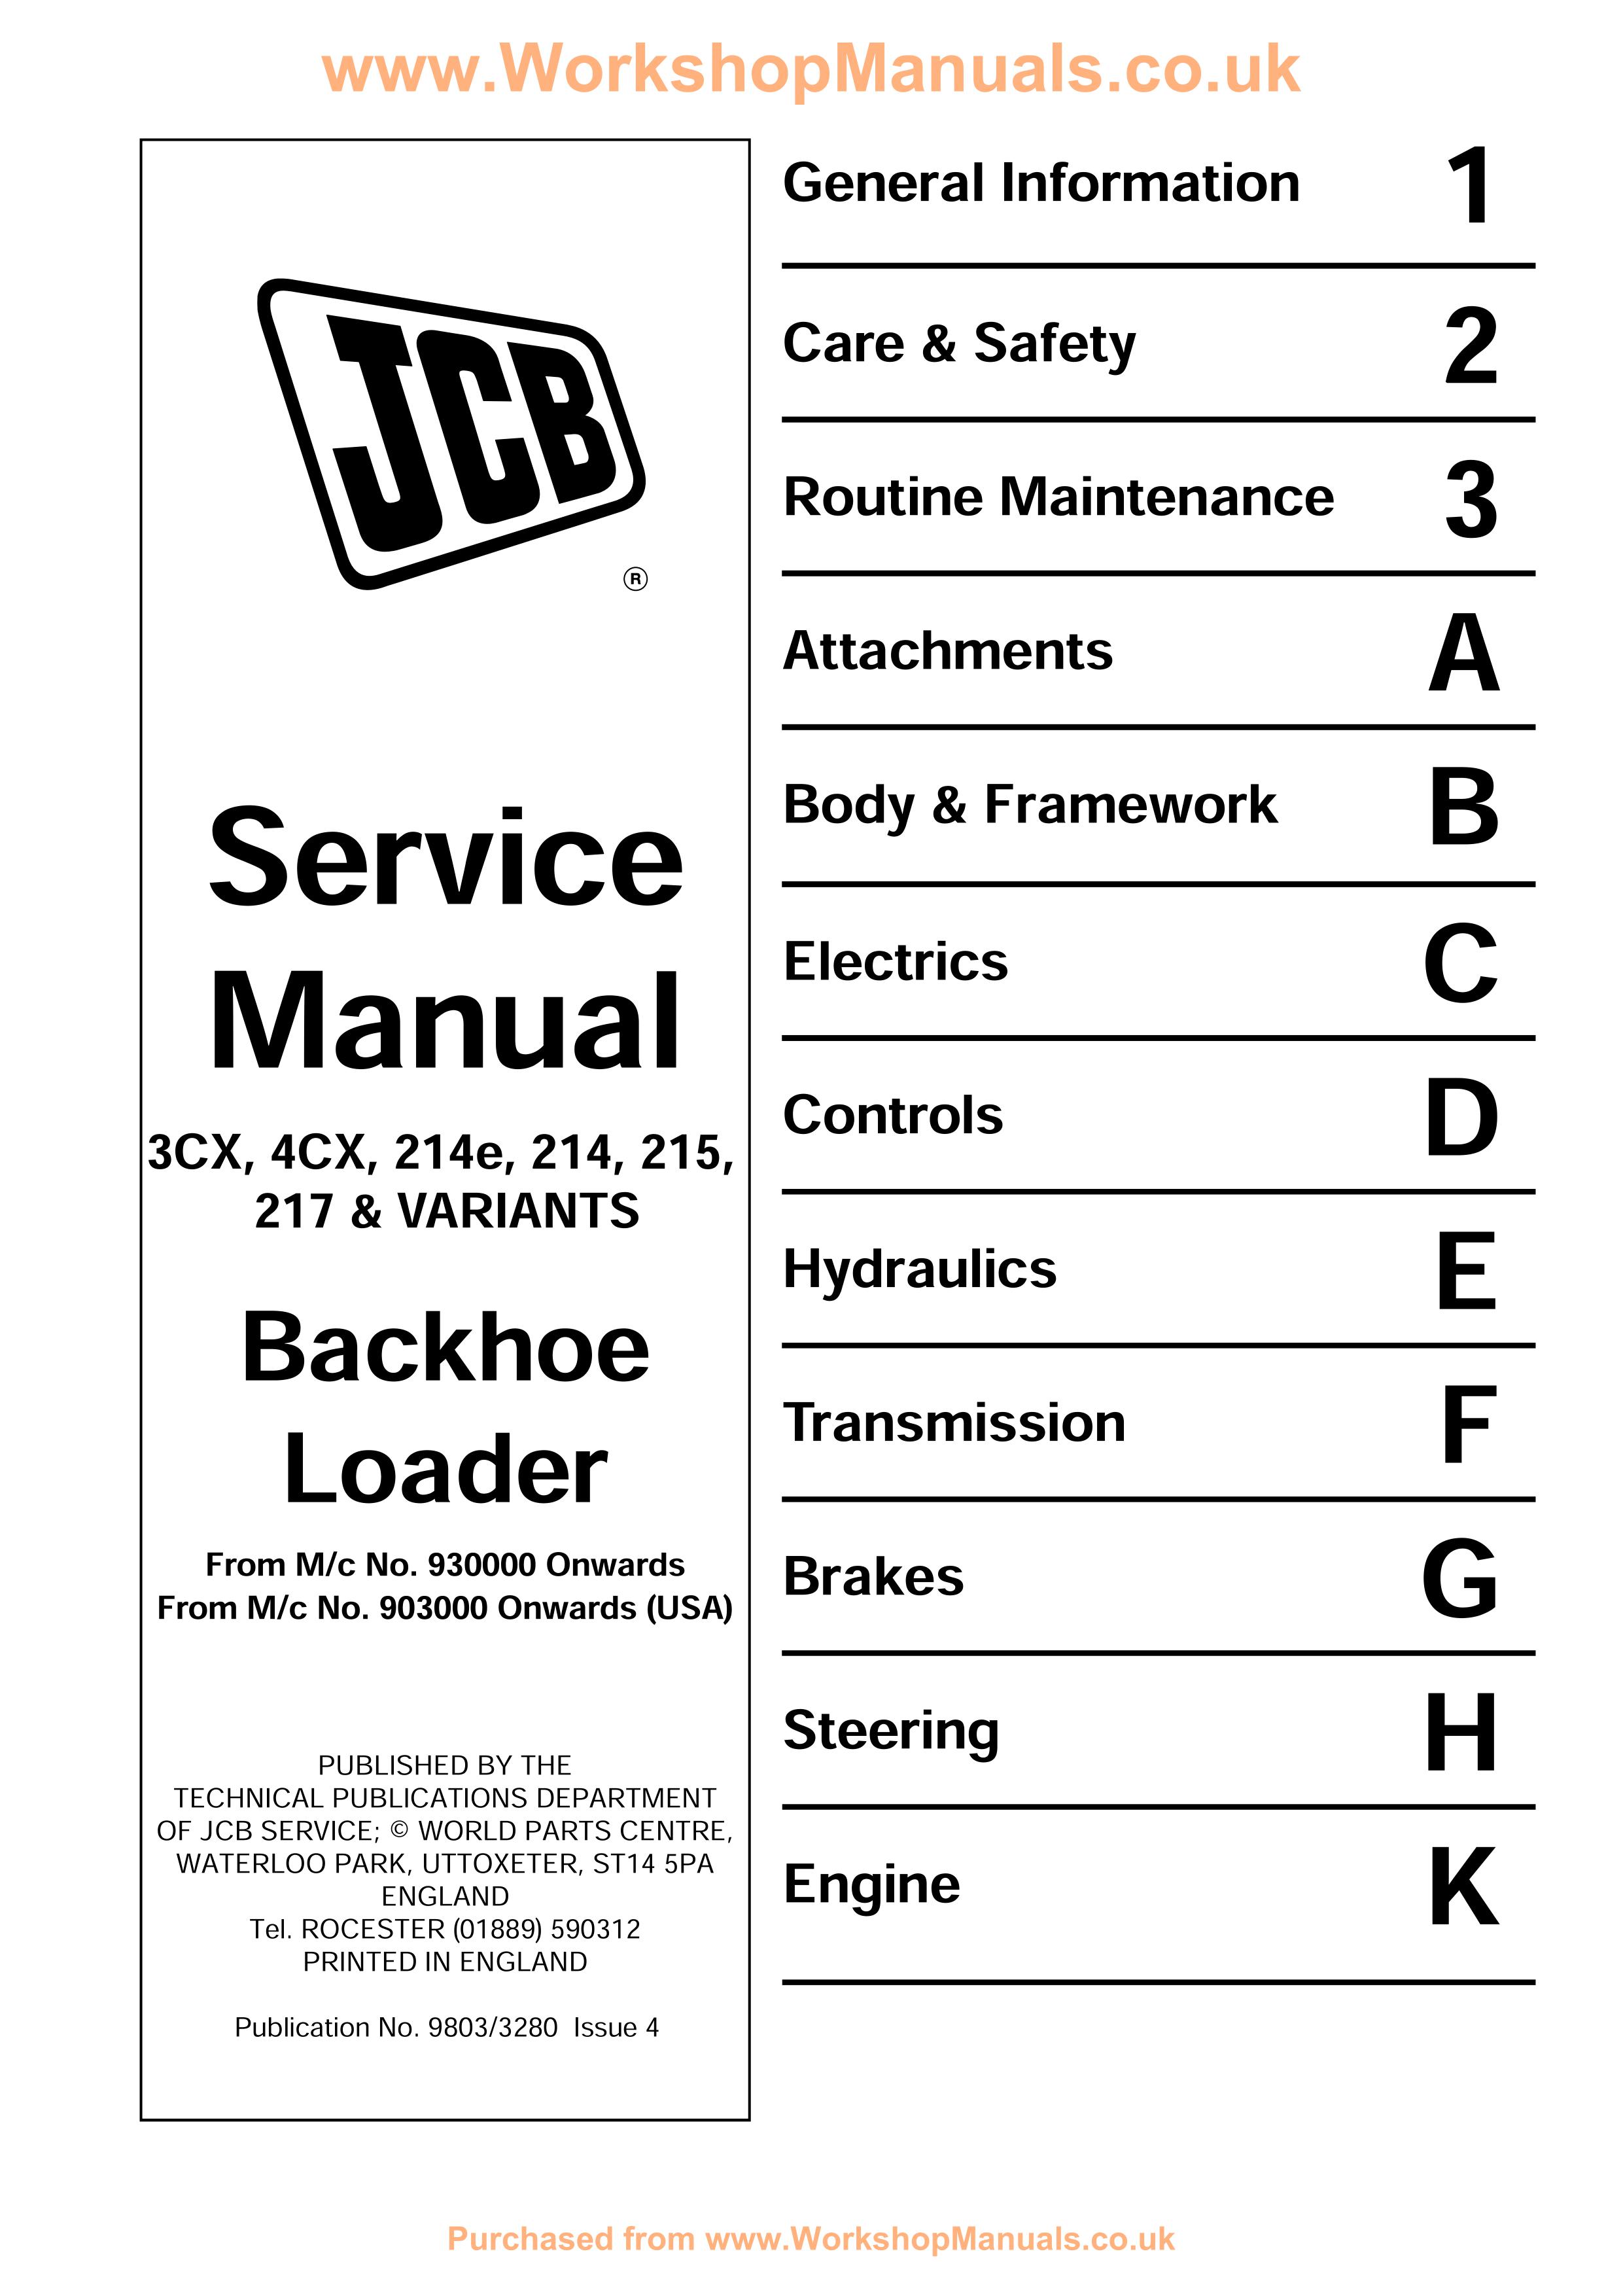 Service Manual JCB backhoe loader 3cx 4cx eng